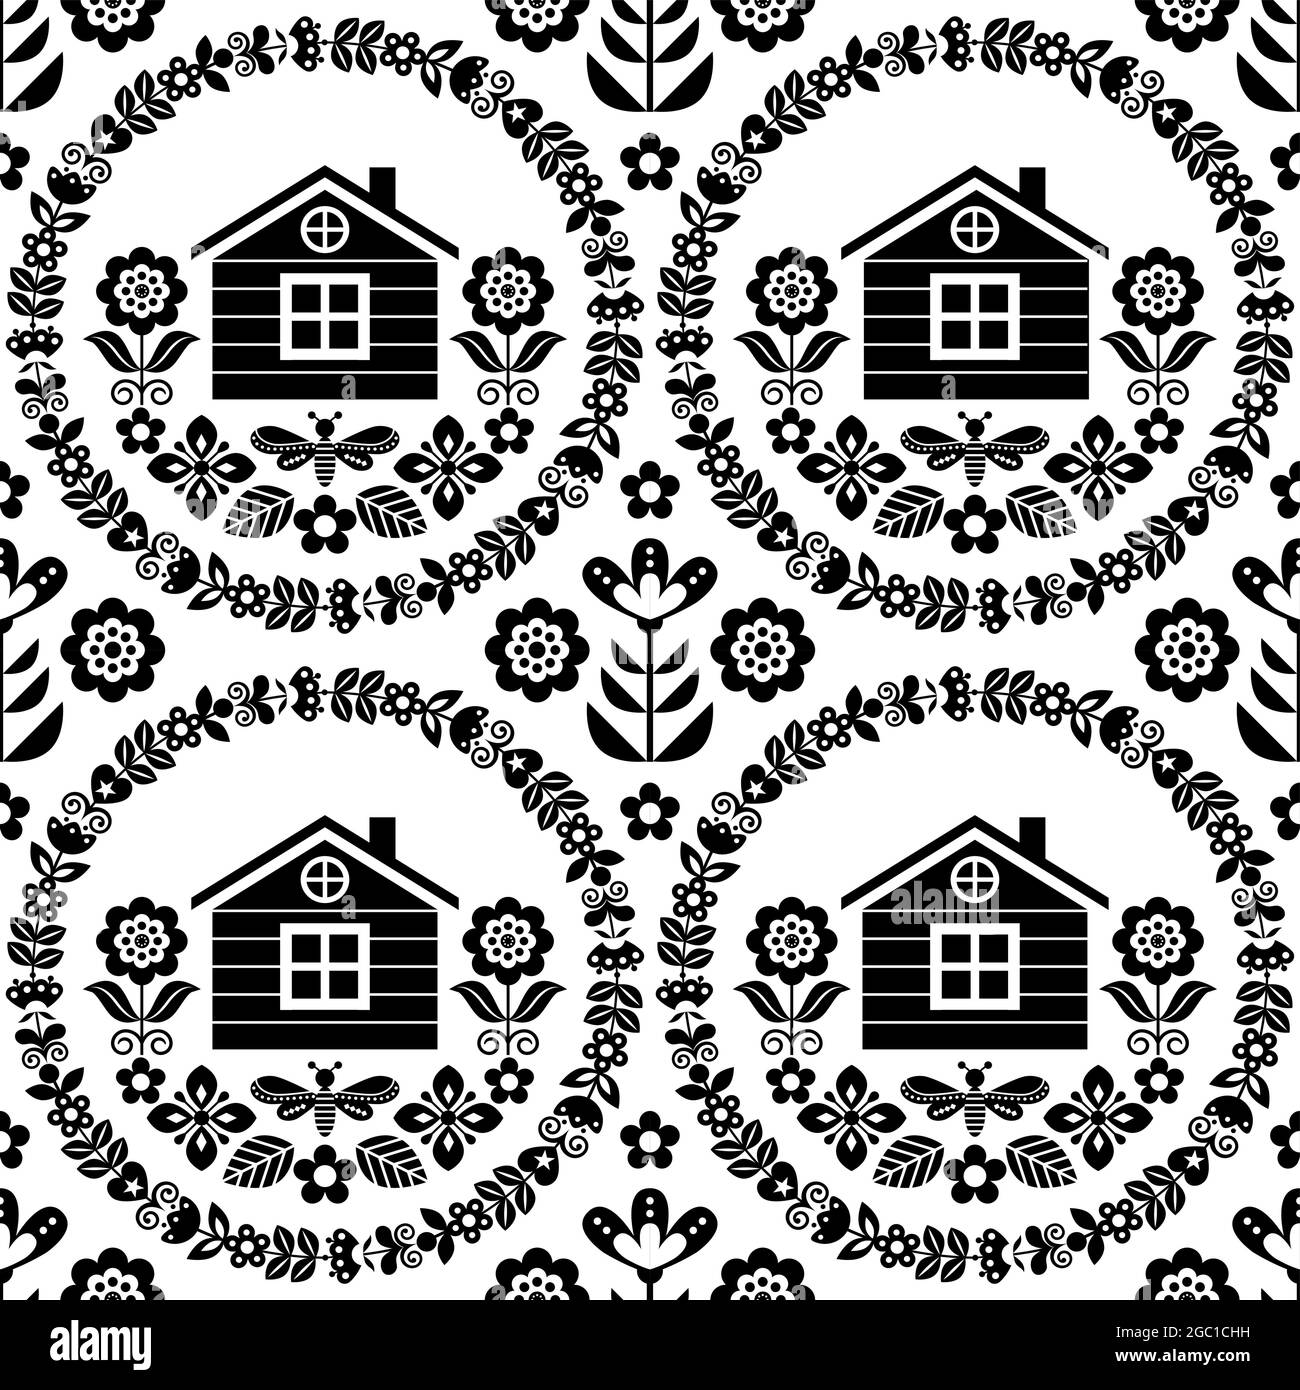 Art folklorique scandinave sans couture, motif fleuri vectoriel, maison finlandaise ou norvégienne, design textile rétro noir et blanc ou imprimé tissu Illustration de Vecteur